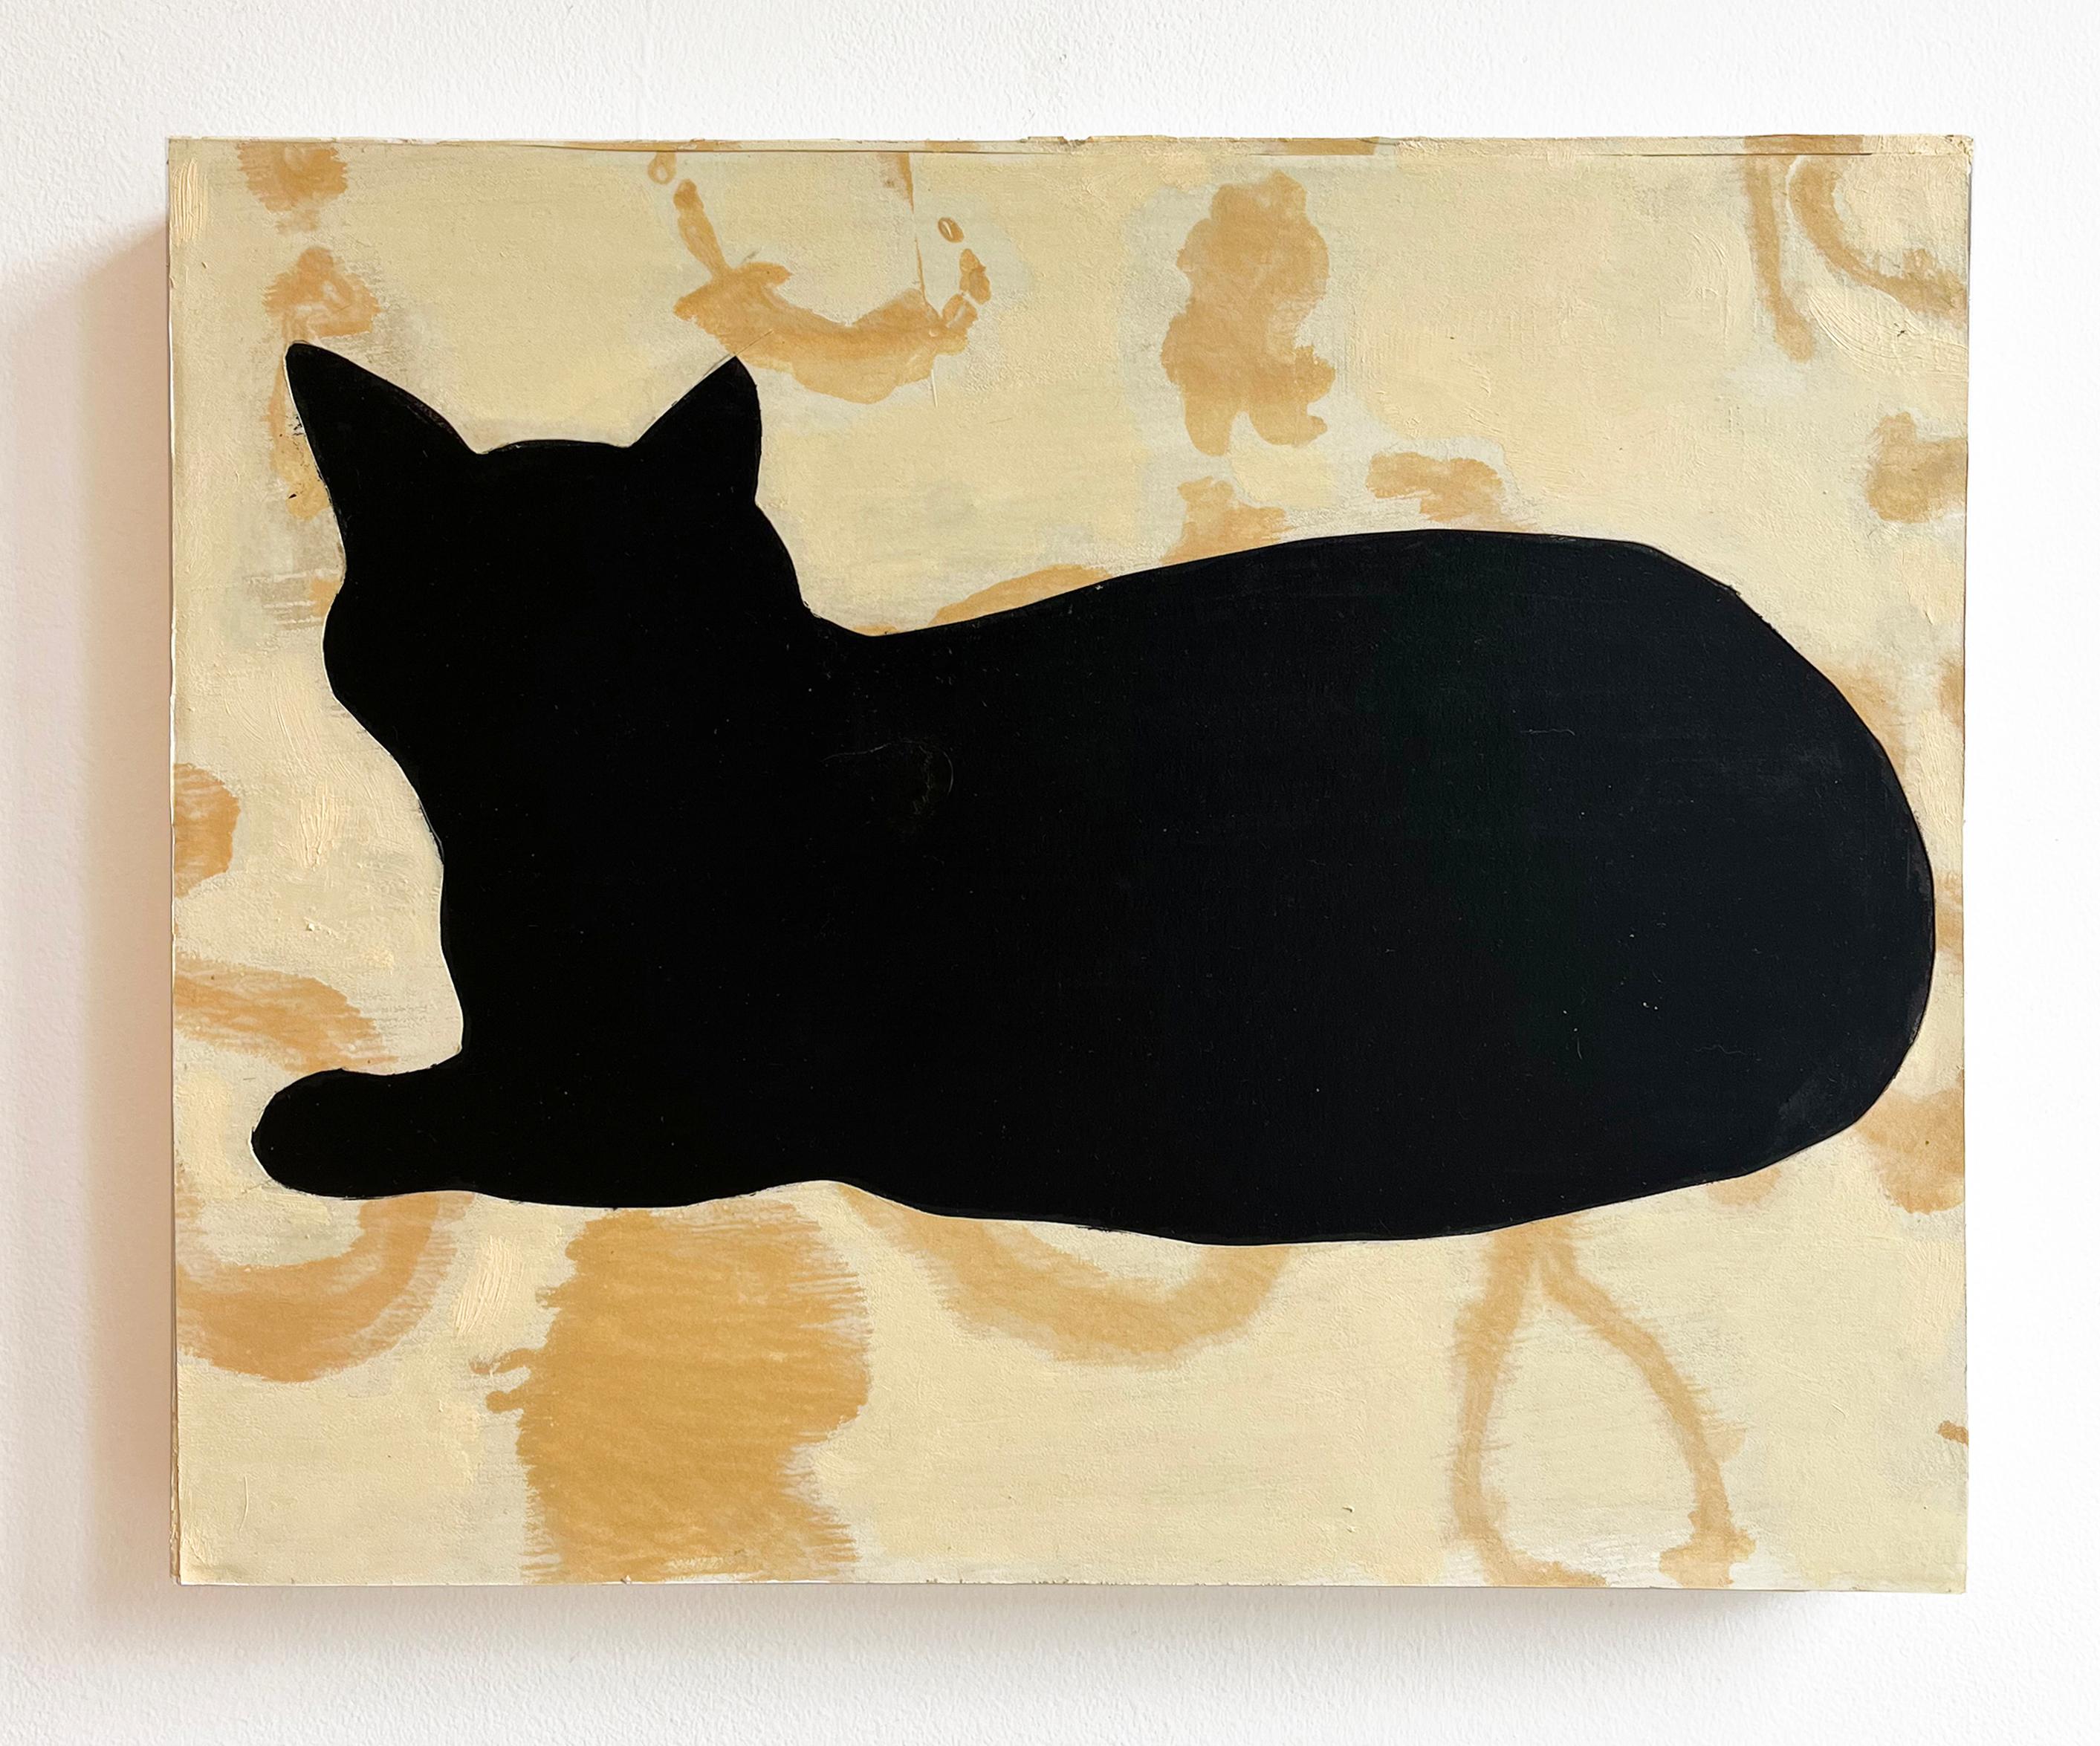 Monotype collé représentant la silhouette d'un chat dans une nature morte.
David Konigsberg
Chat noir, 2023
15